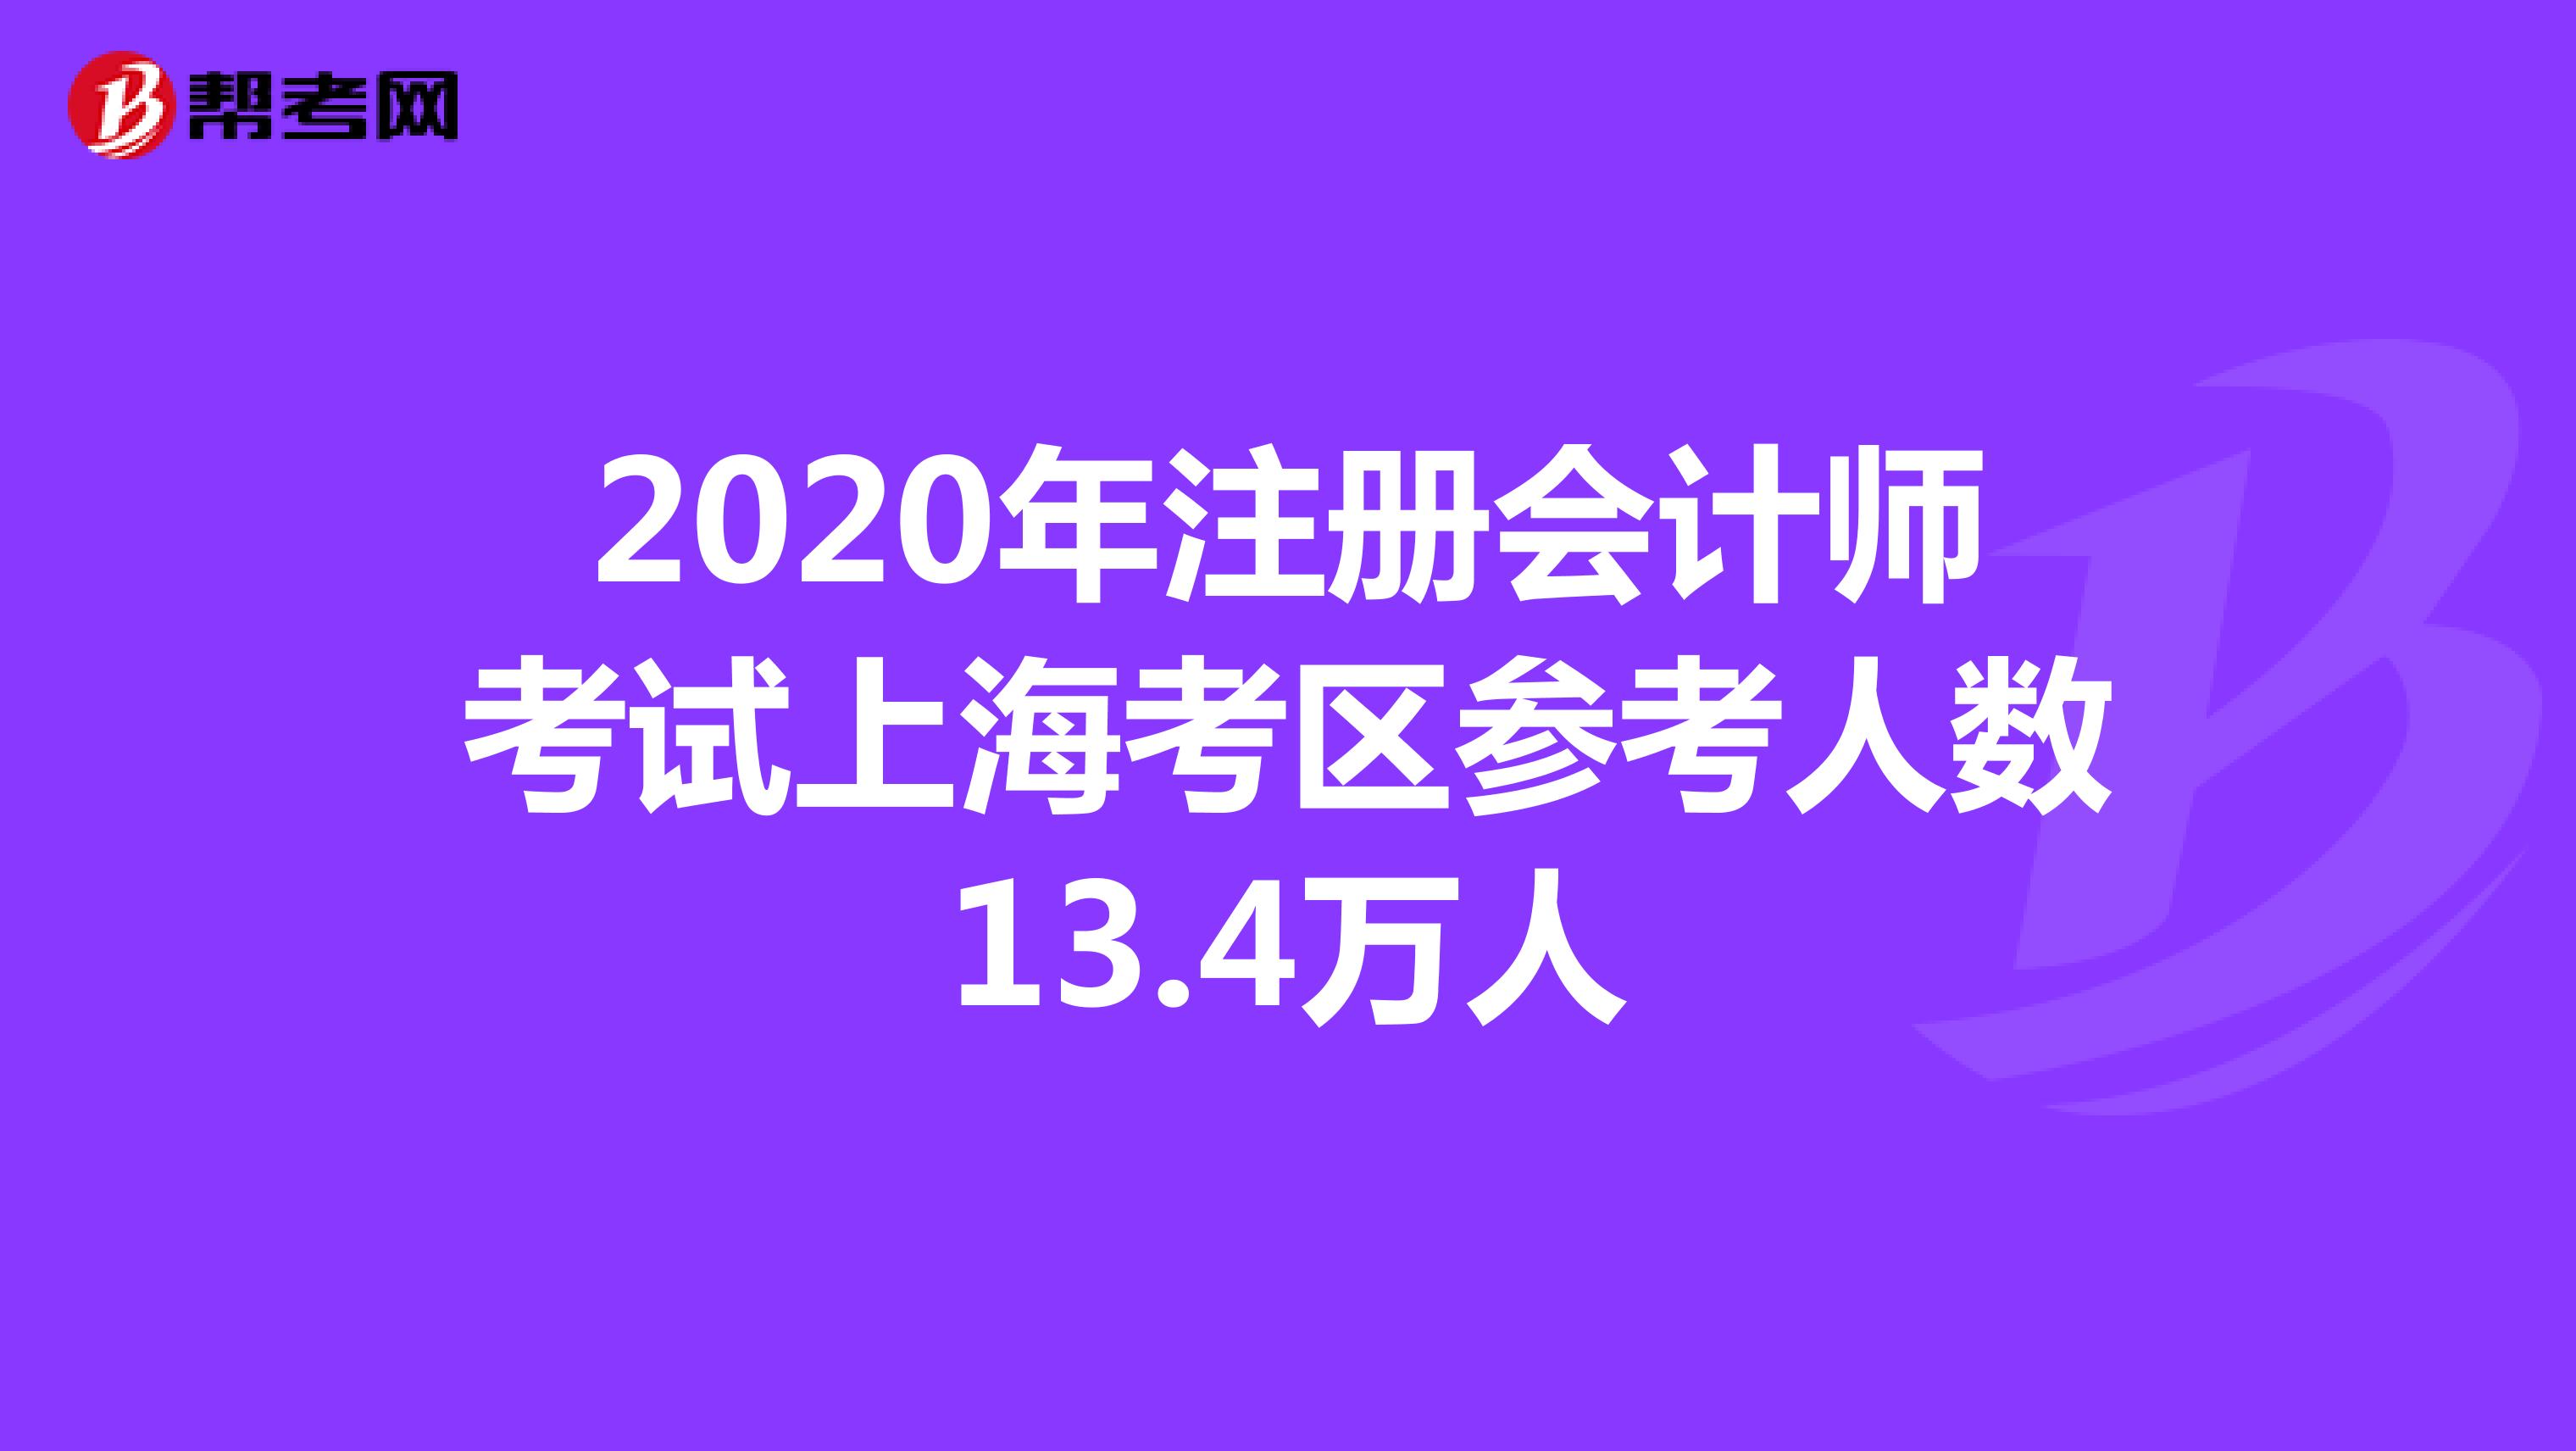 2020年注册会计师考试上海考区参考人数13.4万人